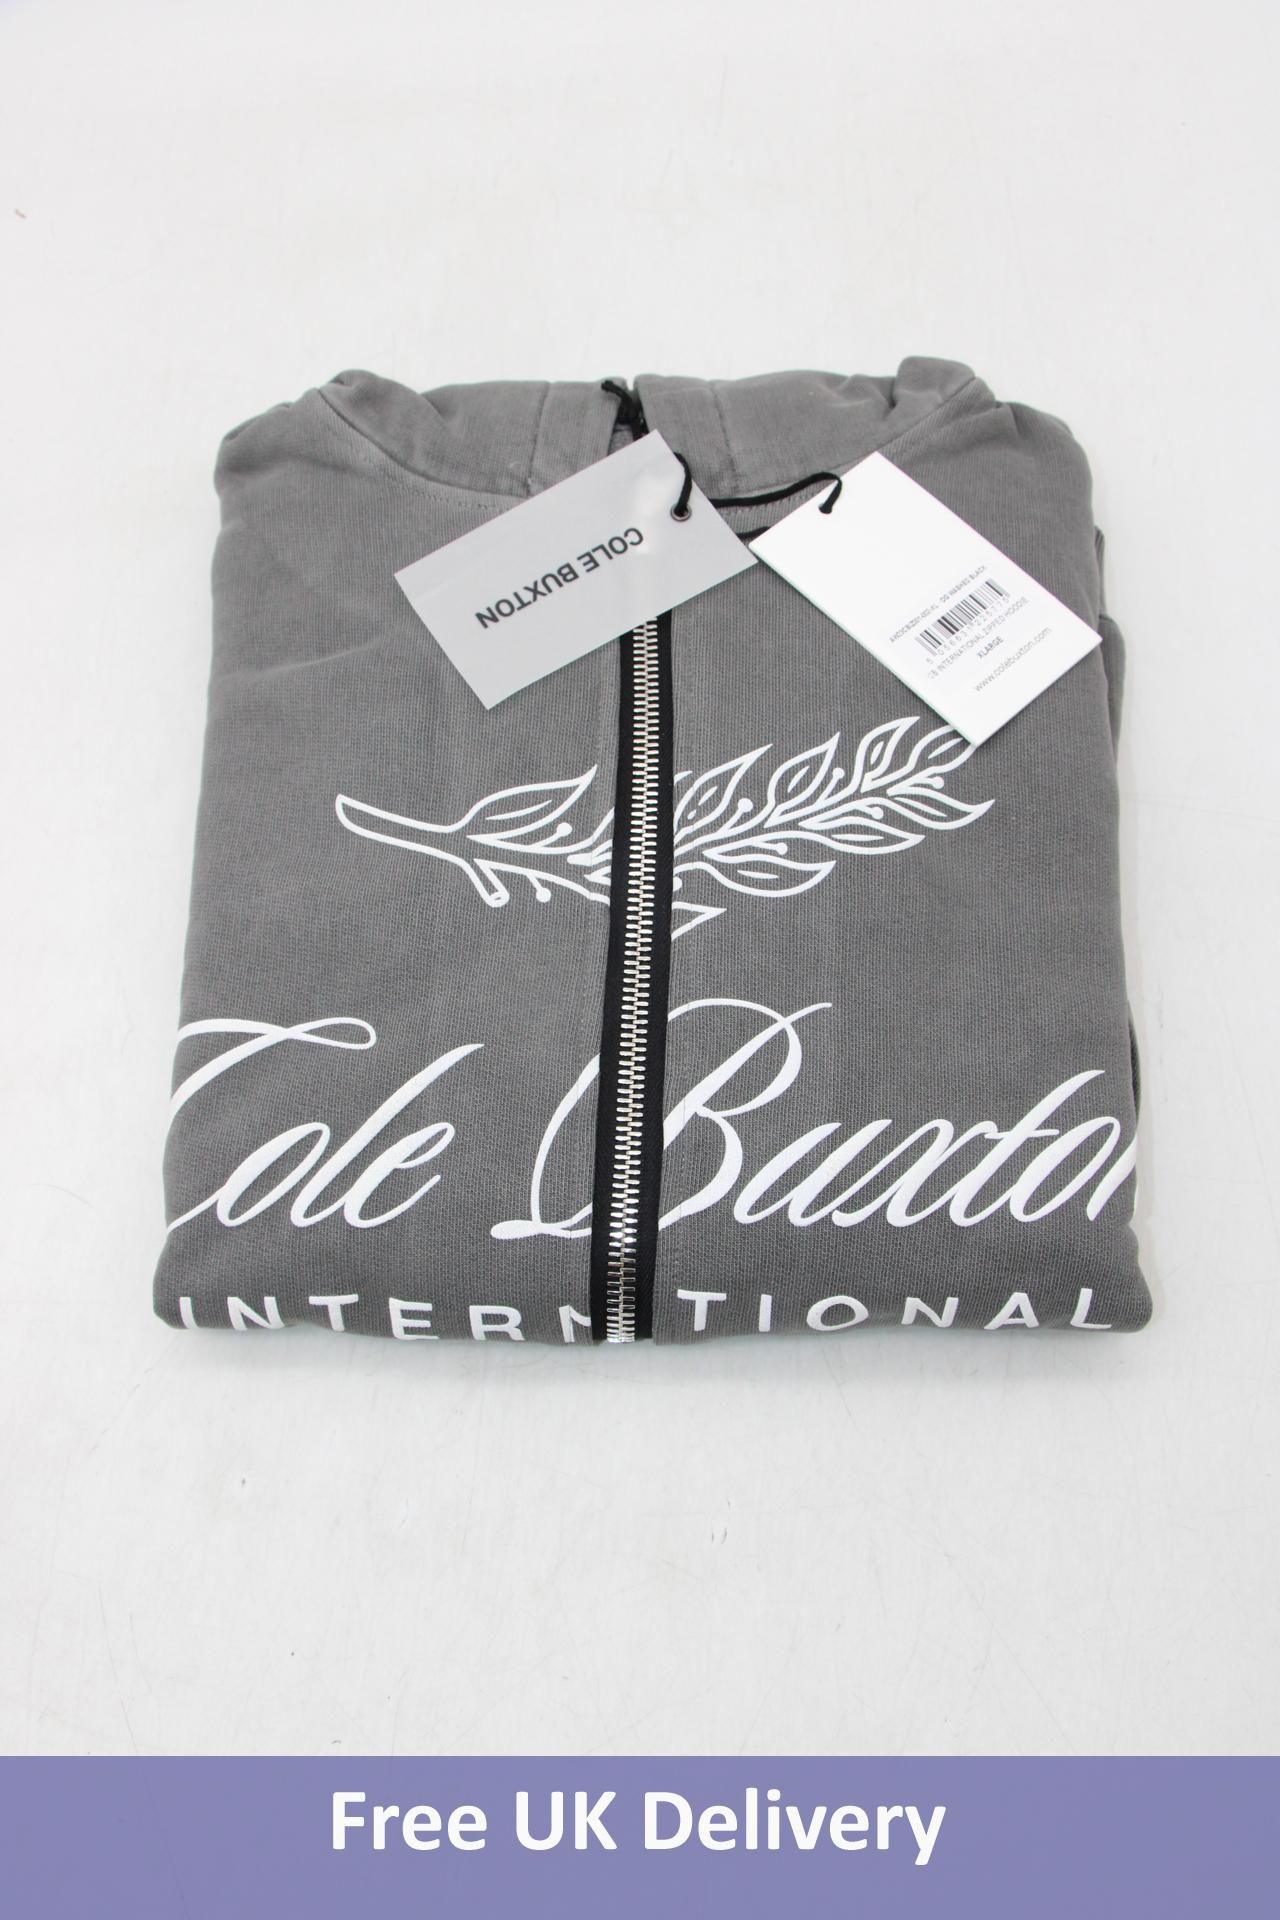 Cole Buxton CB International Zipped Hoodie, OG Washed Black, Size XL